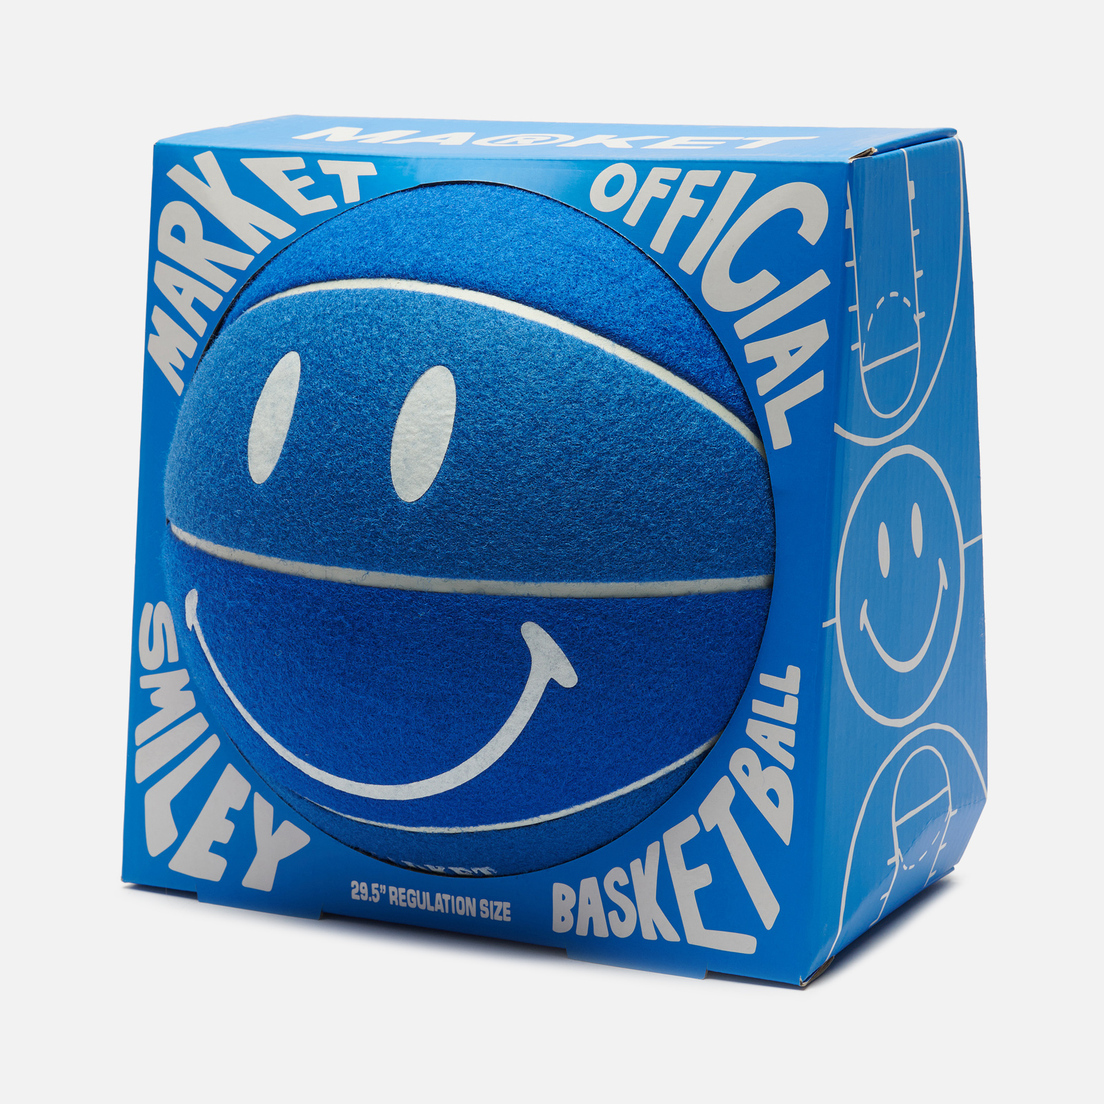 MARKET Баскетбольный мяч Smiley Madrid Tennis